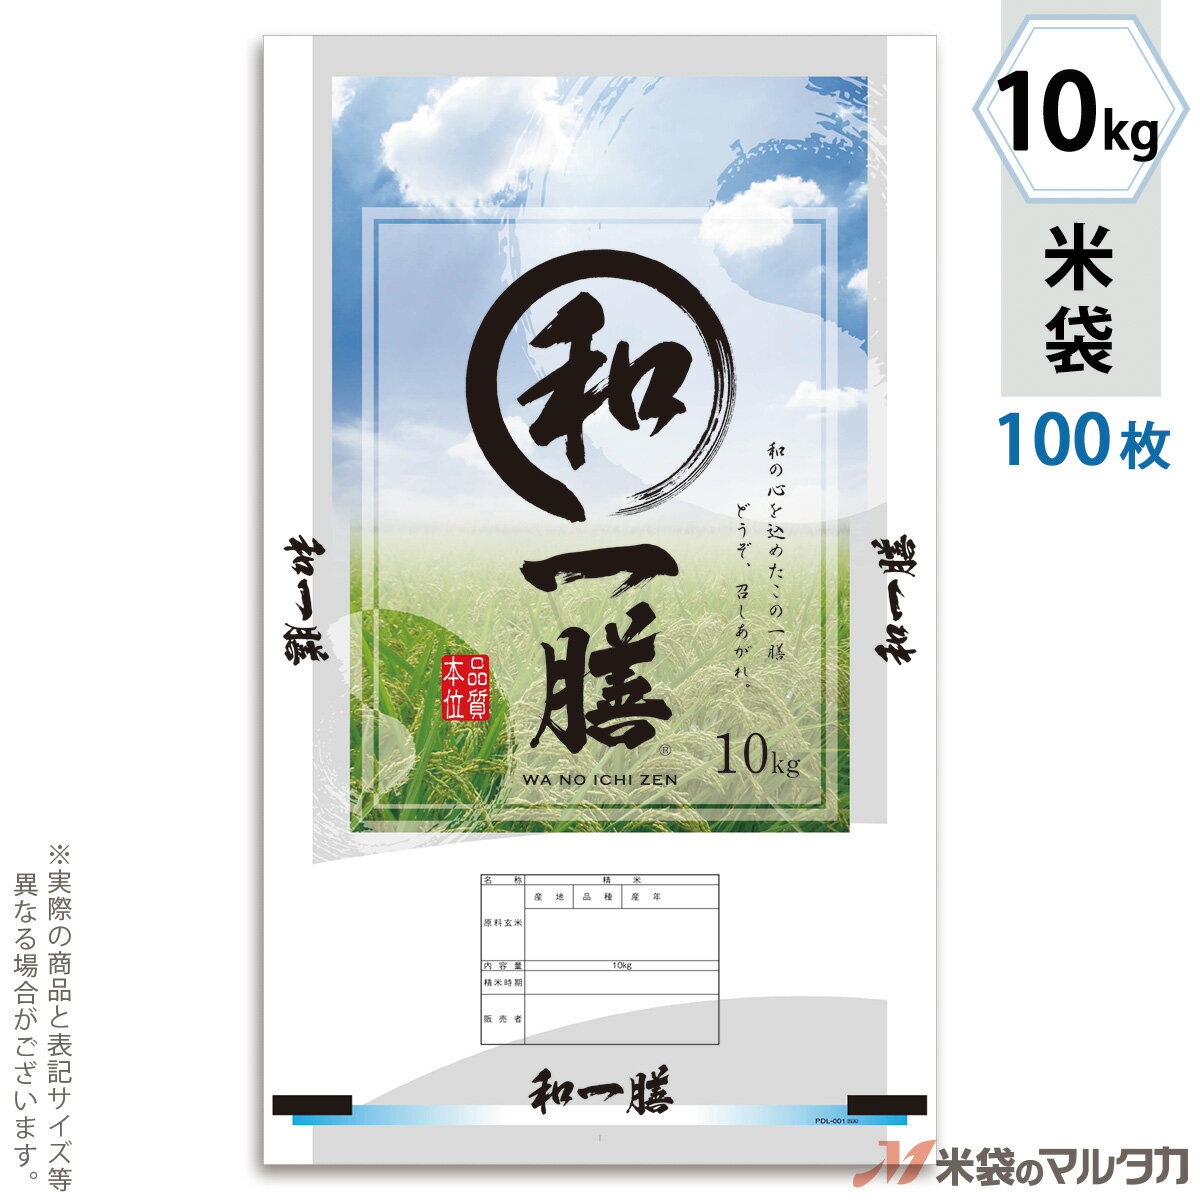 米袋 ポリ マイクロドット 和の一膳 10kg 100枚セット PD-0052